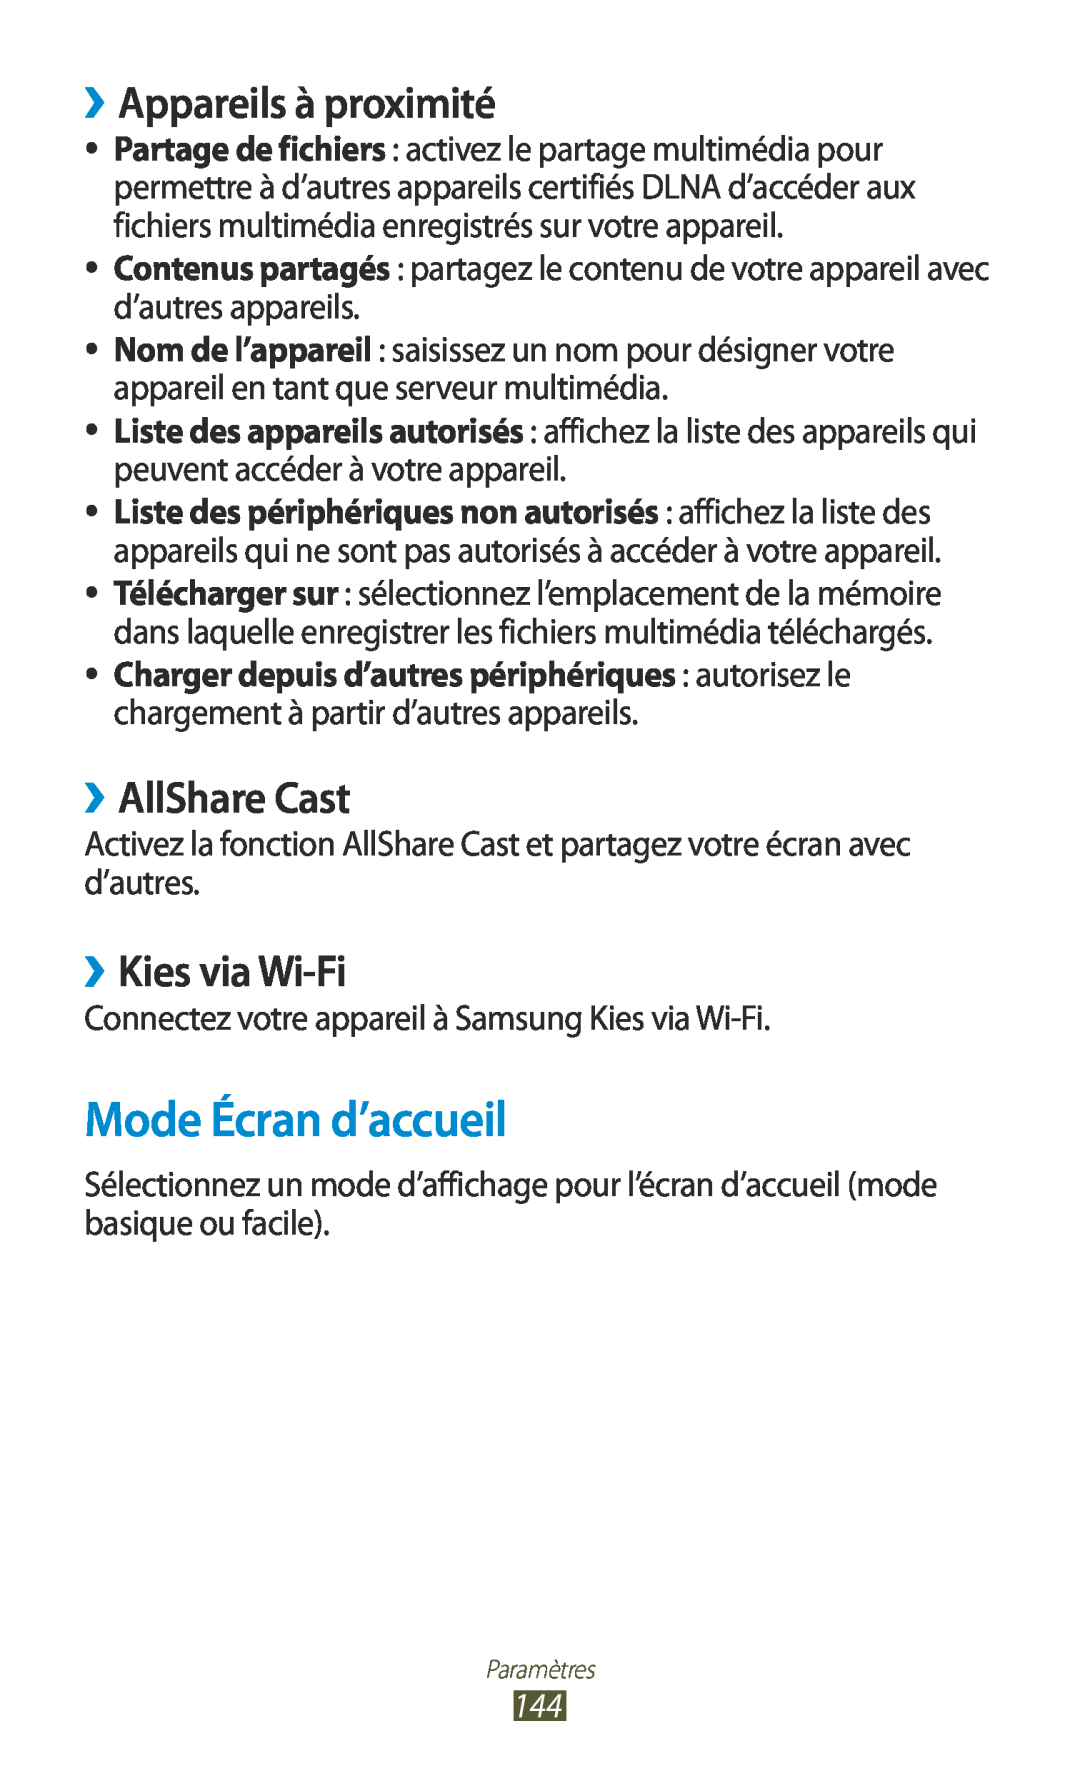 Samsung GT-I9305RWDFTM, GT-I9305OKDFTM Mode Écran d’accueil, ››Appareils à proximité, ››AllShare Cast, ››Kies via Wi-Fi 